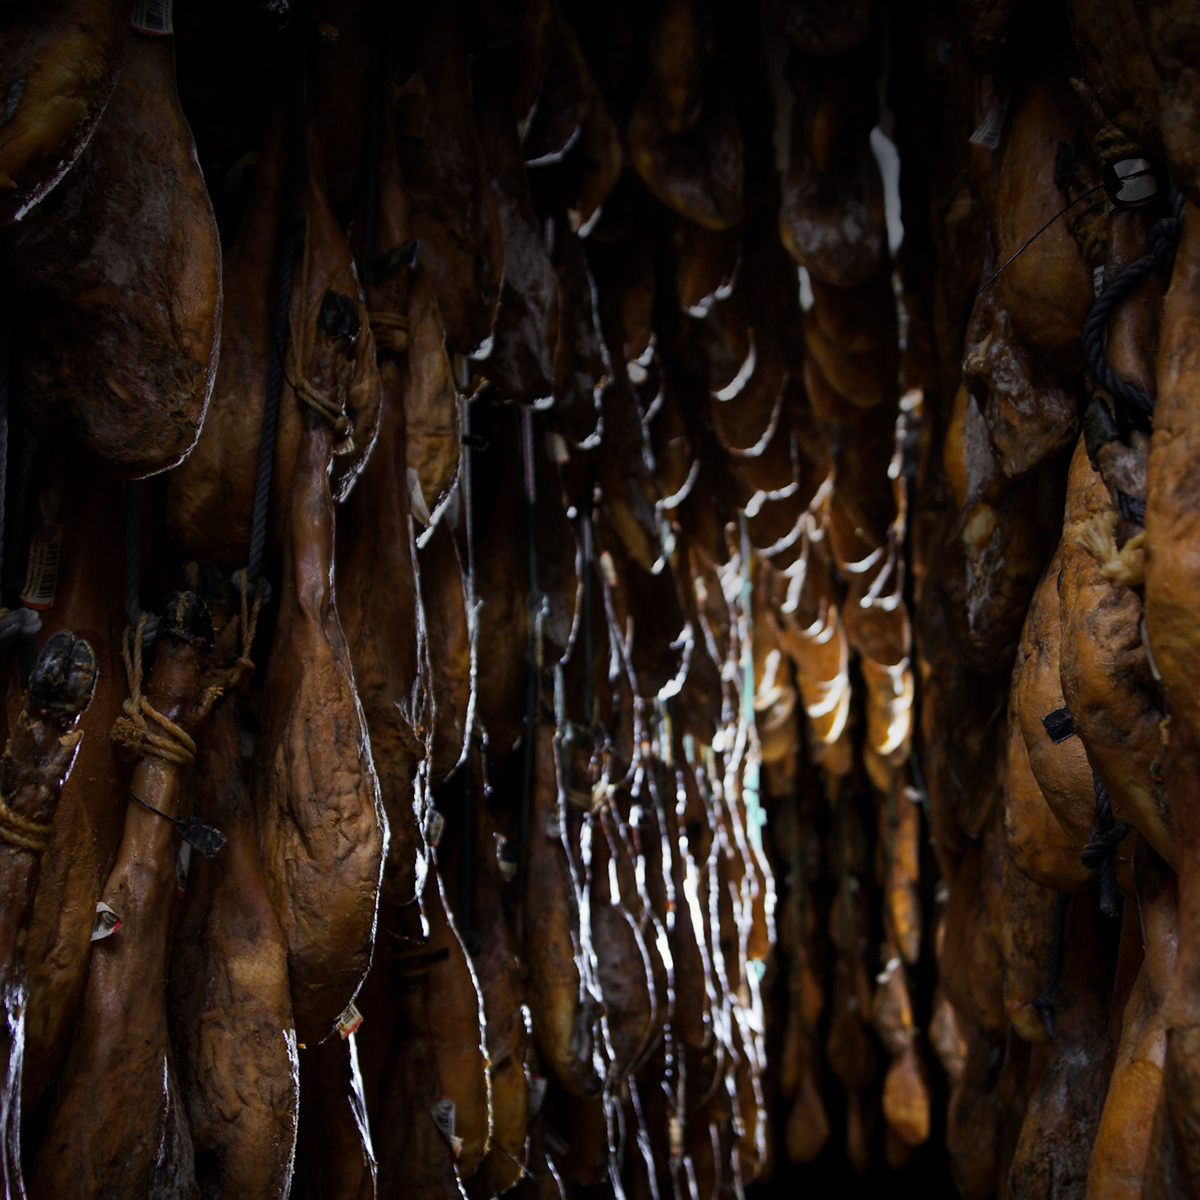 El Jamón de Bellota 100% Ibérico #AltaExpresion es una de las obras maestras culinarias más preciadas y como tal, debe elaborarse y cuidarse con delicadeza.

Descubre el proceso que le permite convertirse en el mejor jamón 100% ibérico 👉 bit.ly/3OWZDCO 

#IbericosCOVAP